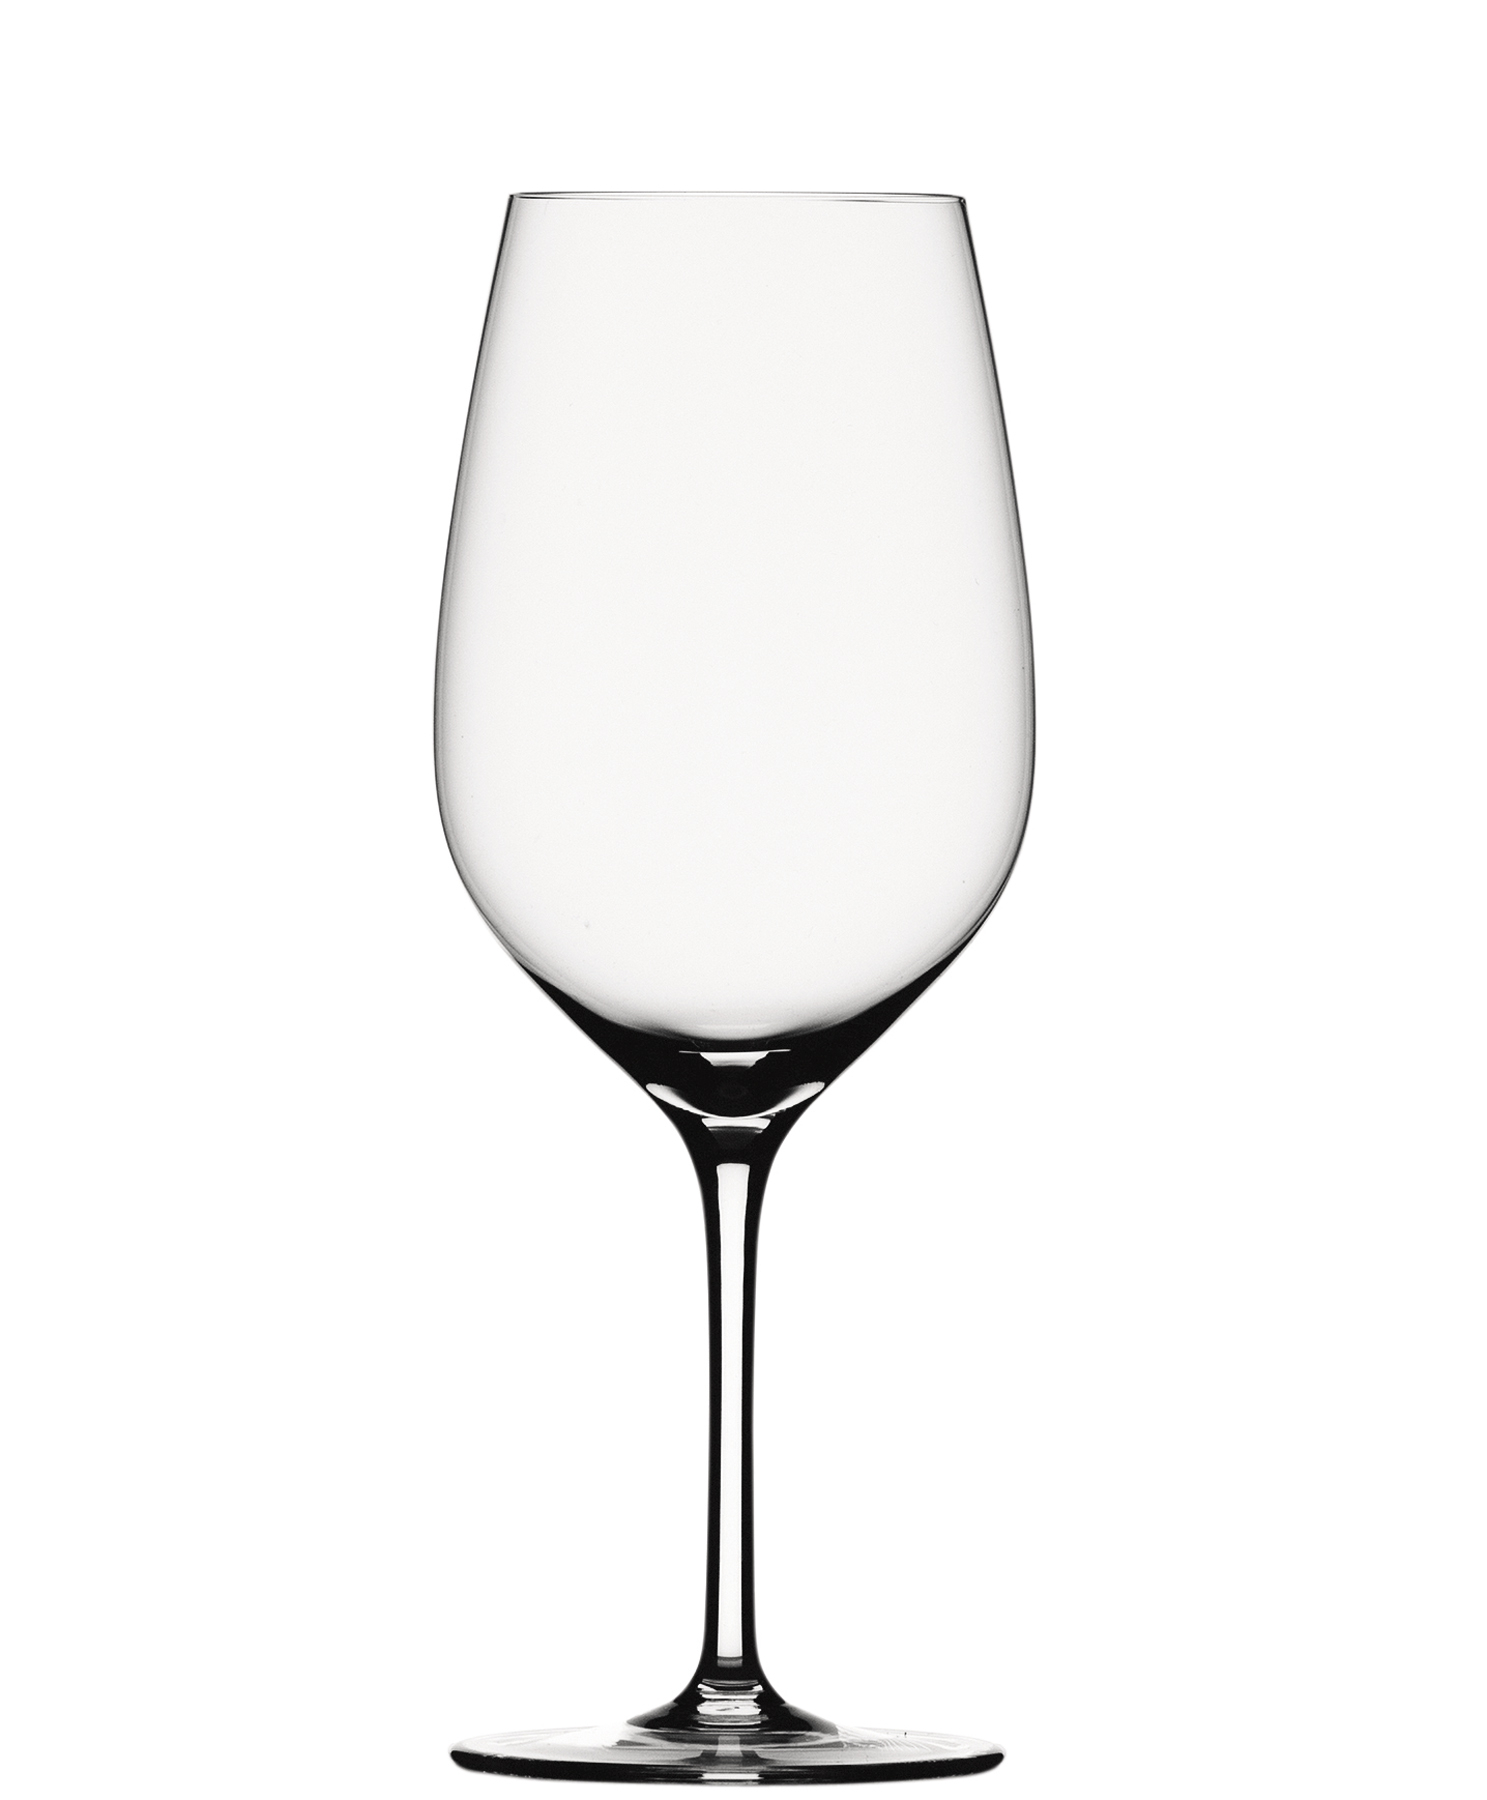 Magnum red wine glass Grand Palais Exquisit, Spiegelau - 620ml (1 pc.)